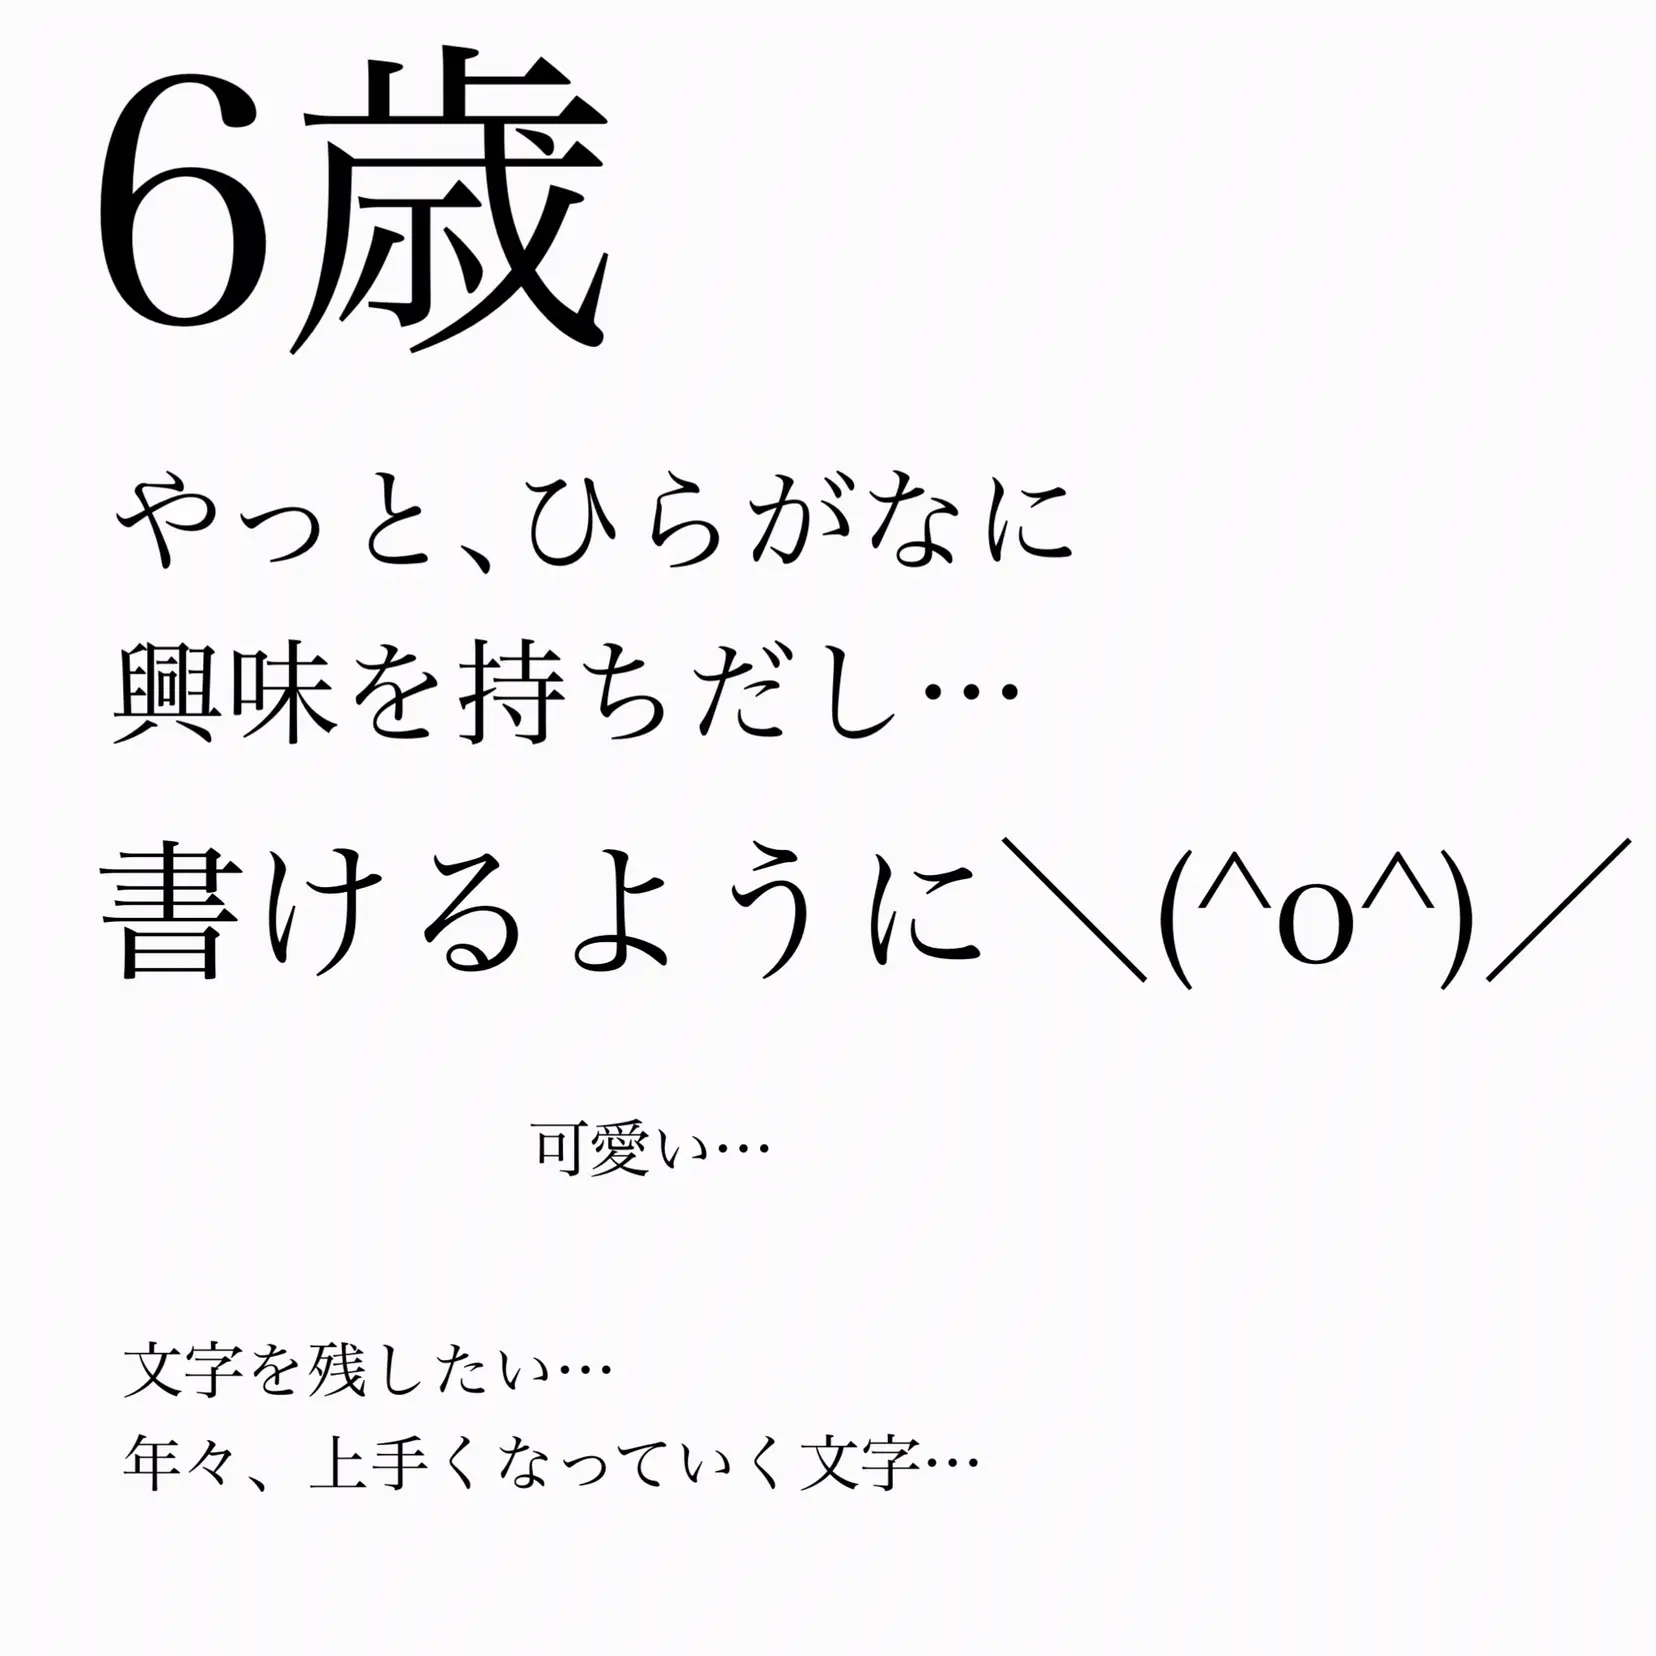 子供の字で作るひらがな表 Kutakutakuuta28が投稿したフォトブック Lemon8